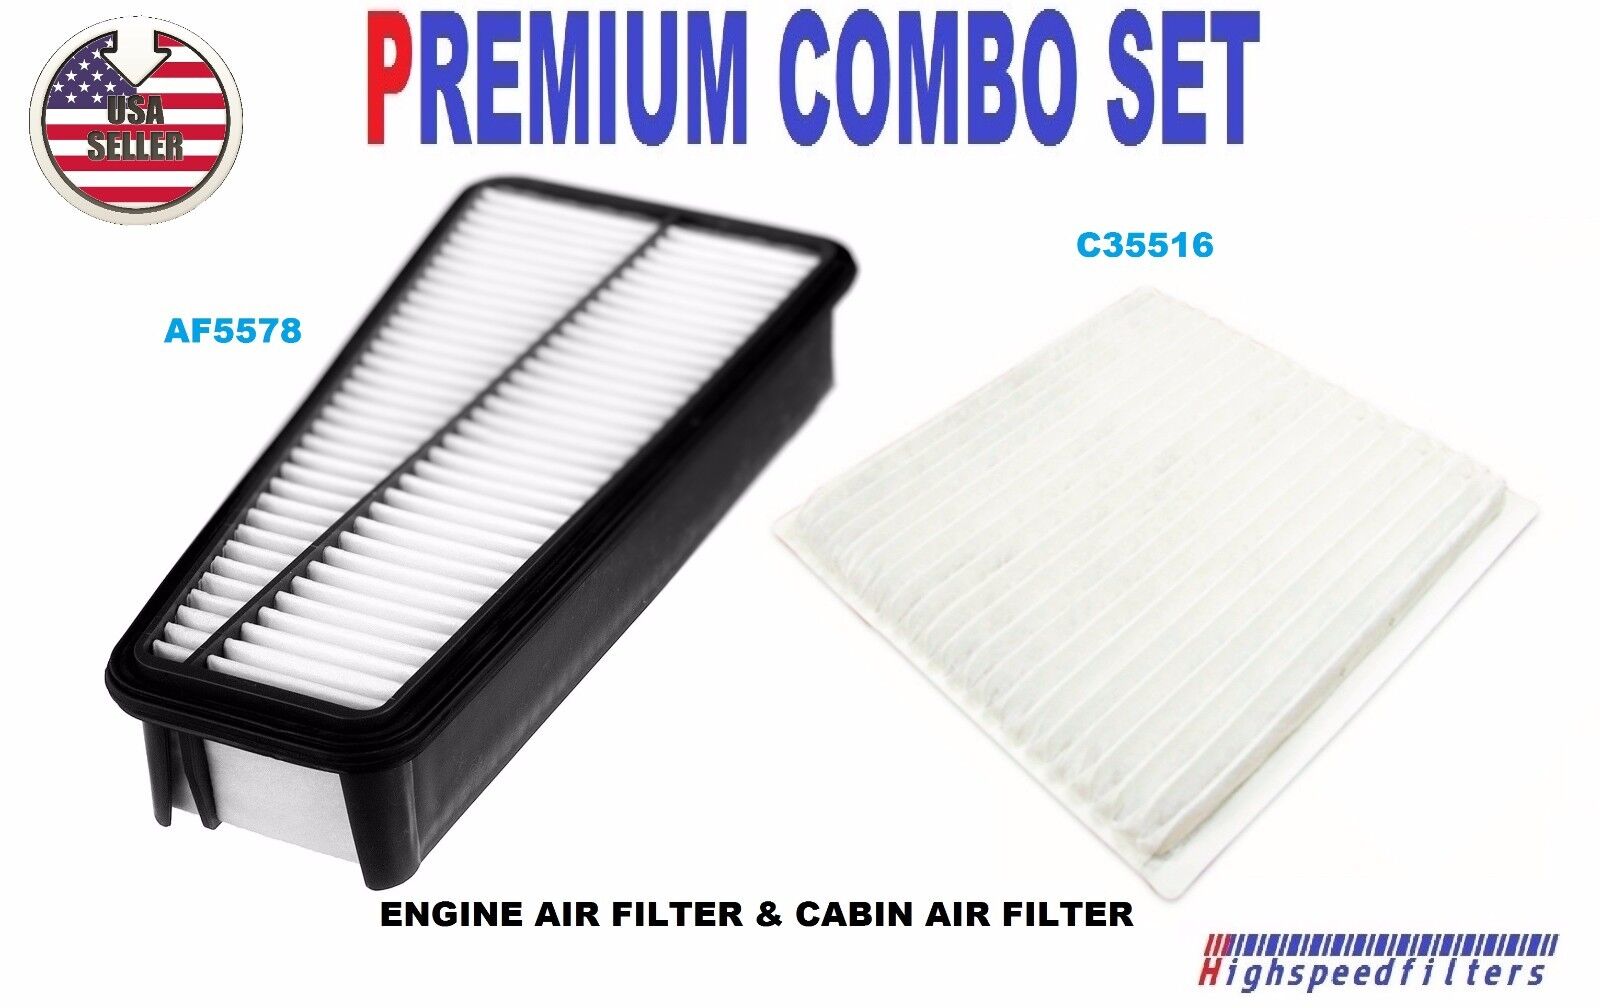 COMBO SET Air Filter & Cabin Filter for 2006 - 2009 4RUNNER FJ CRUISER 4.0L V6